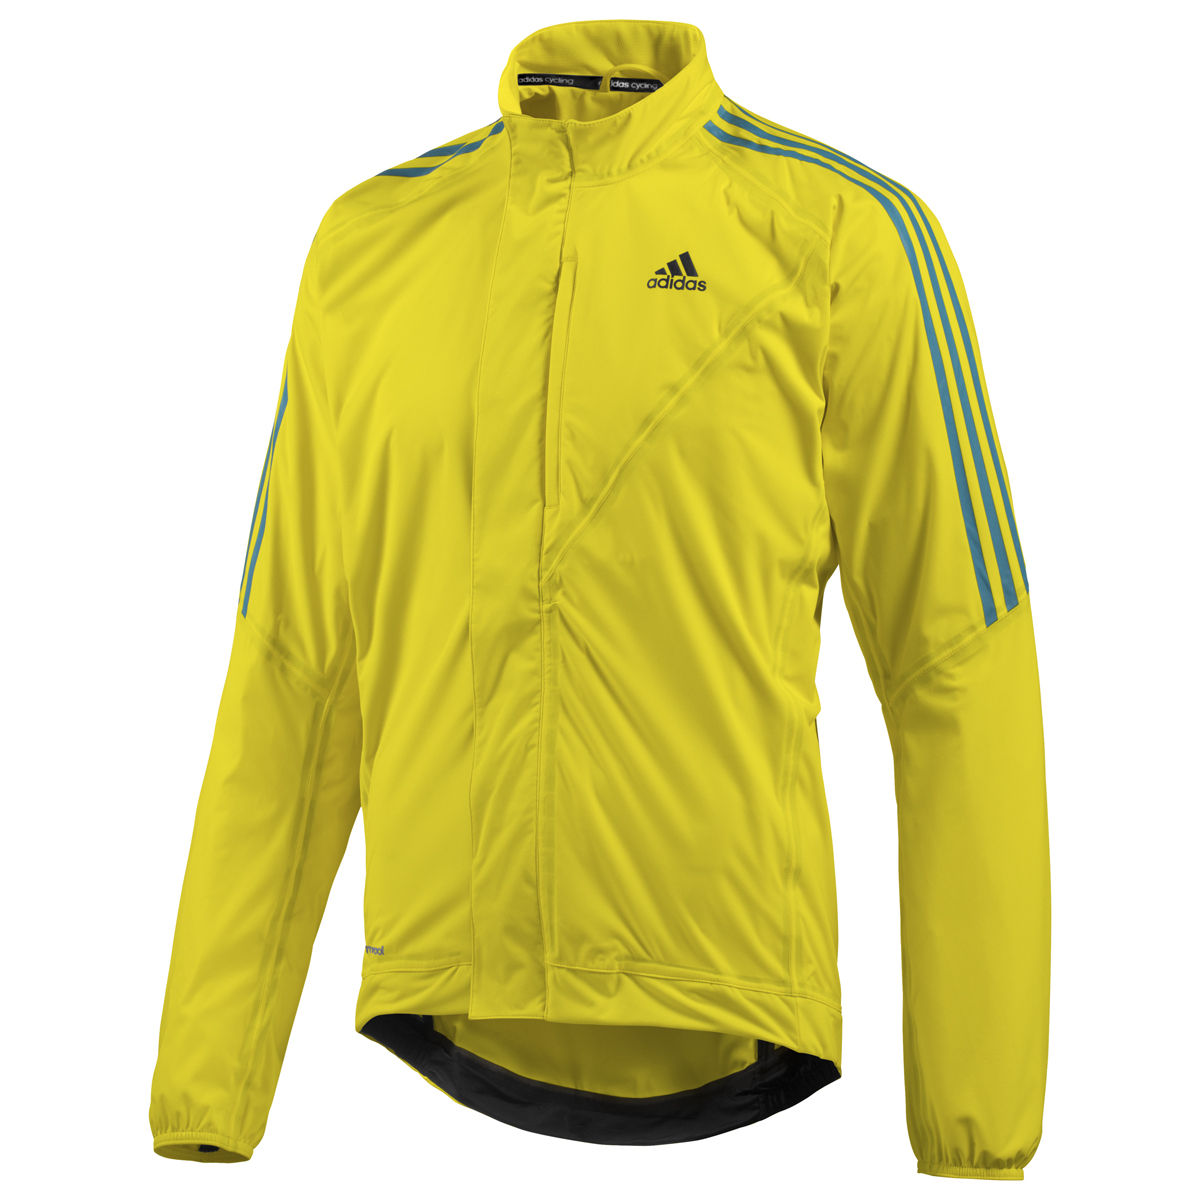 adidas cycling jacket mens